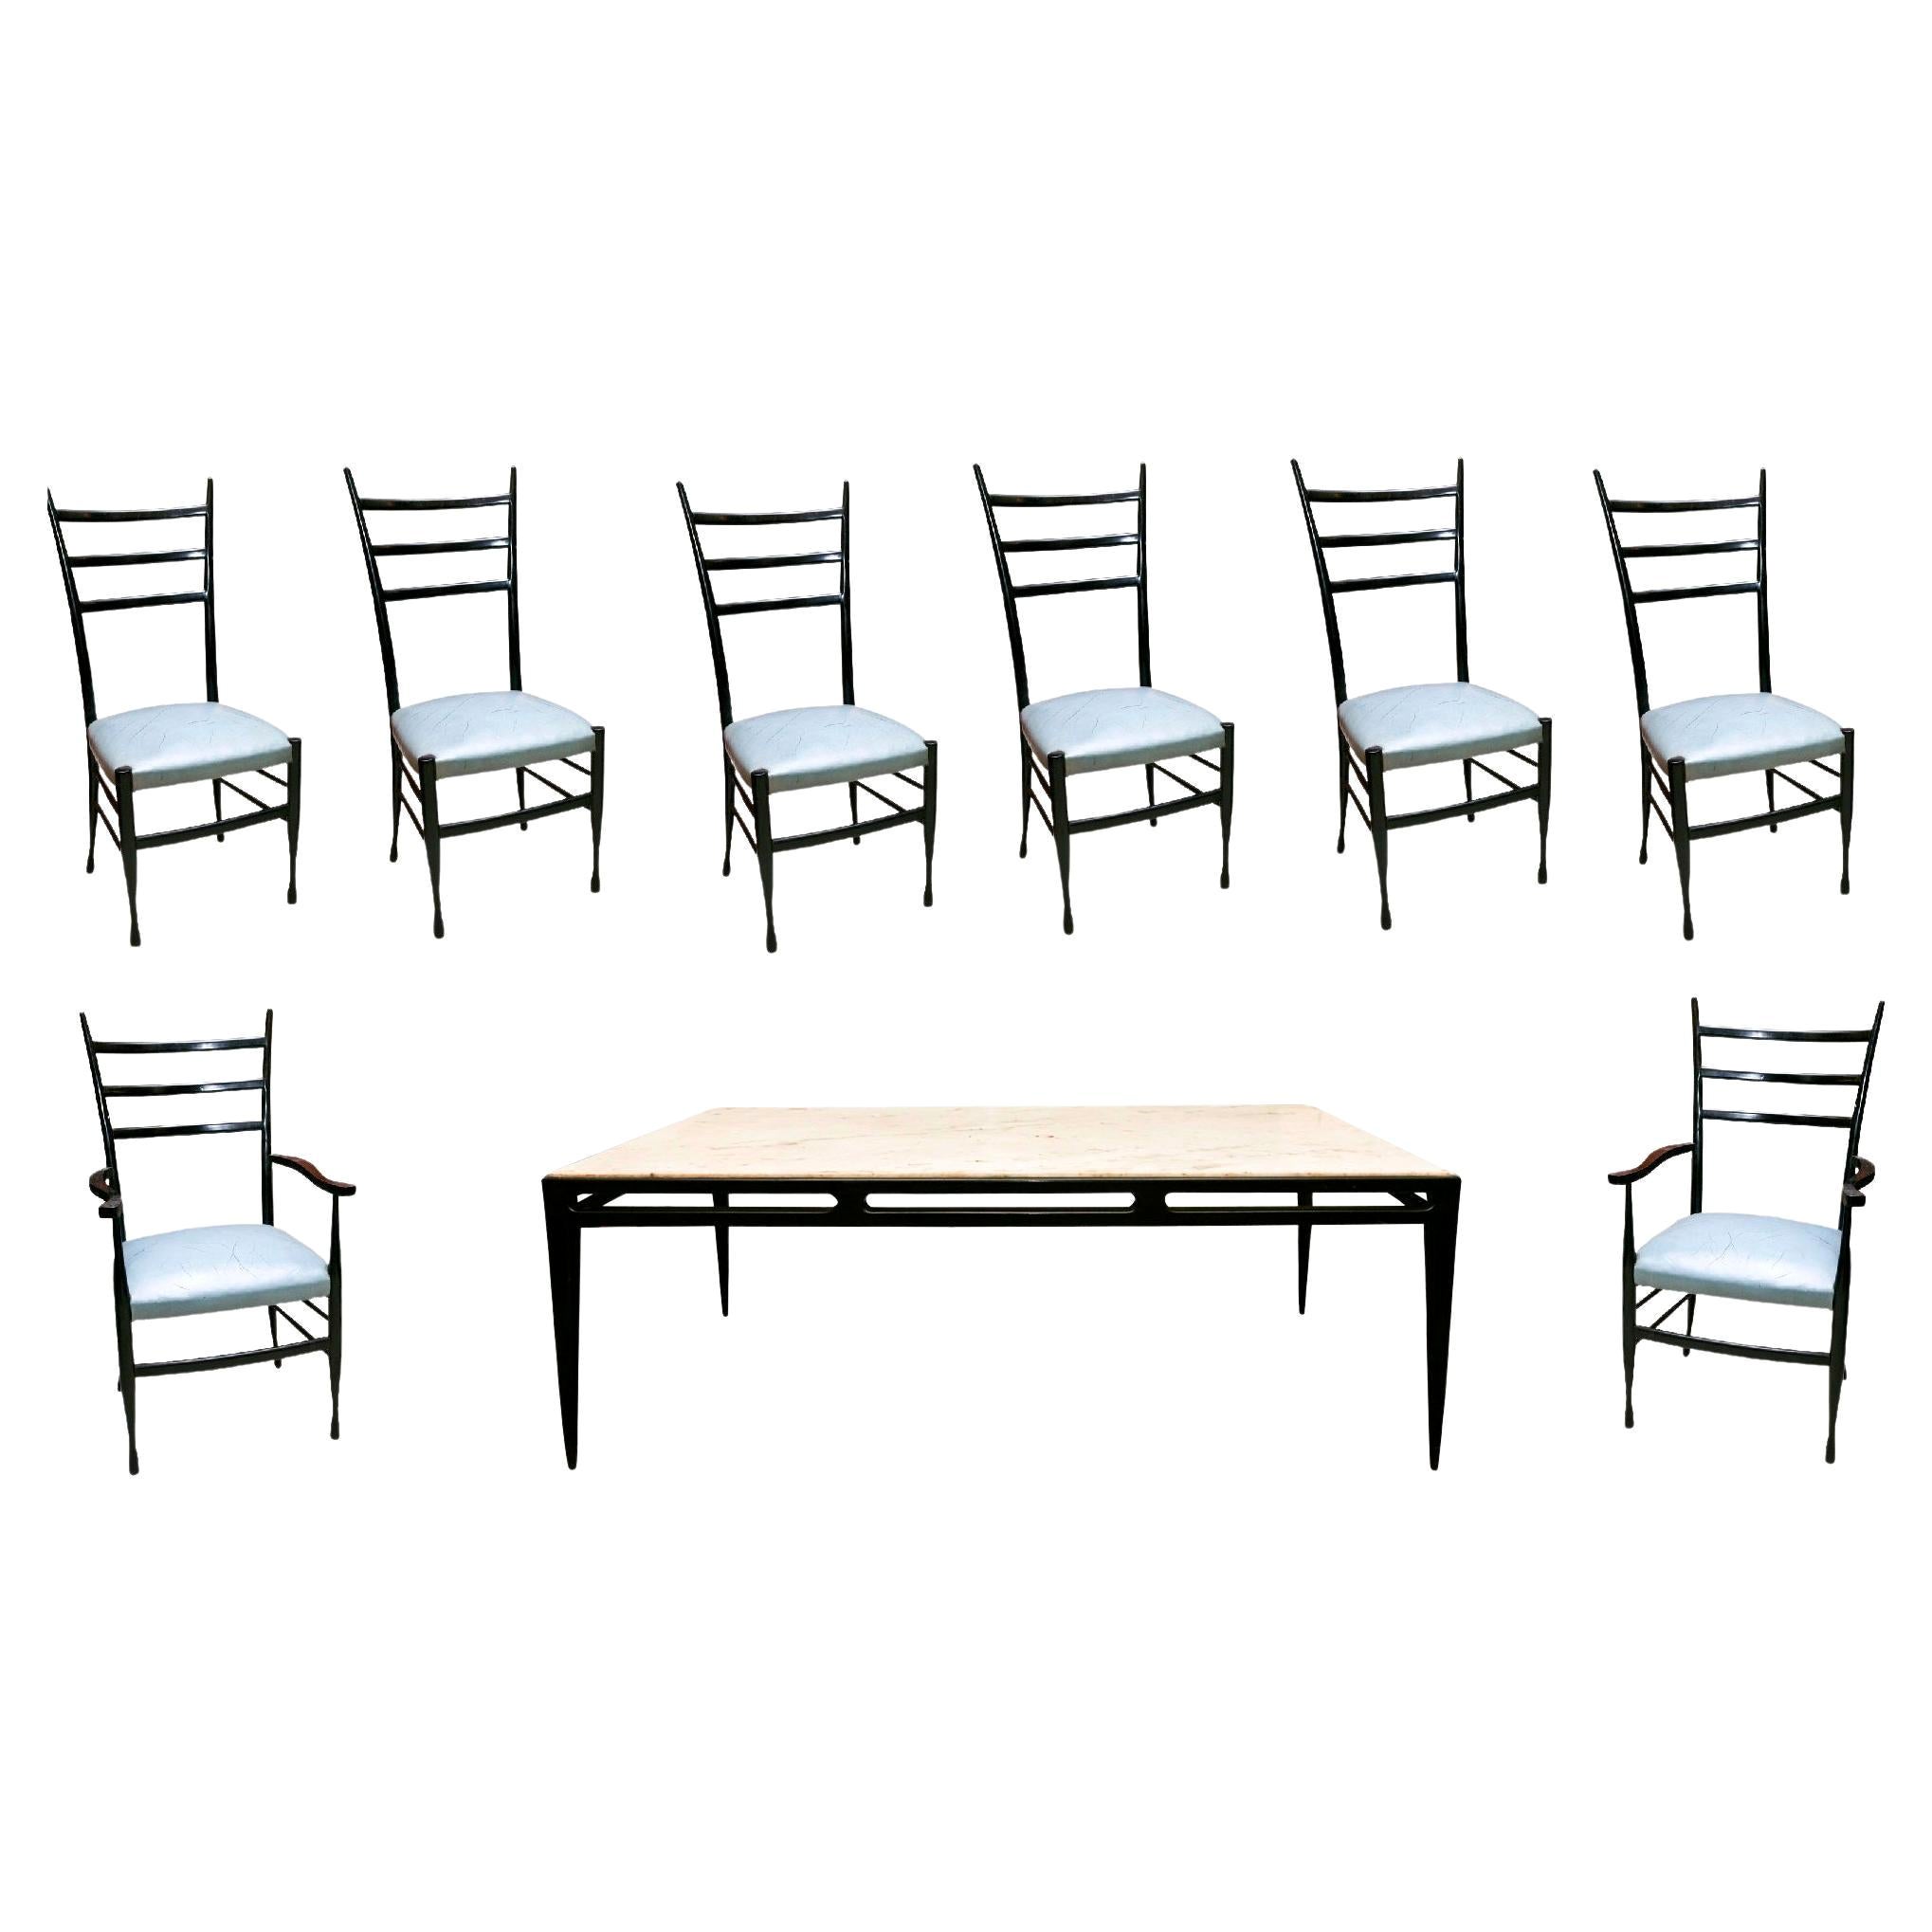 Tisch „8 Personen“, 2 Sessel und 6 Stühle, Gio Ponti zugeschrieben, 1965